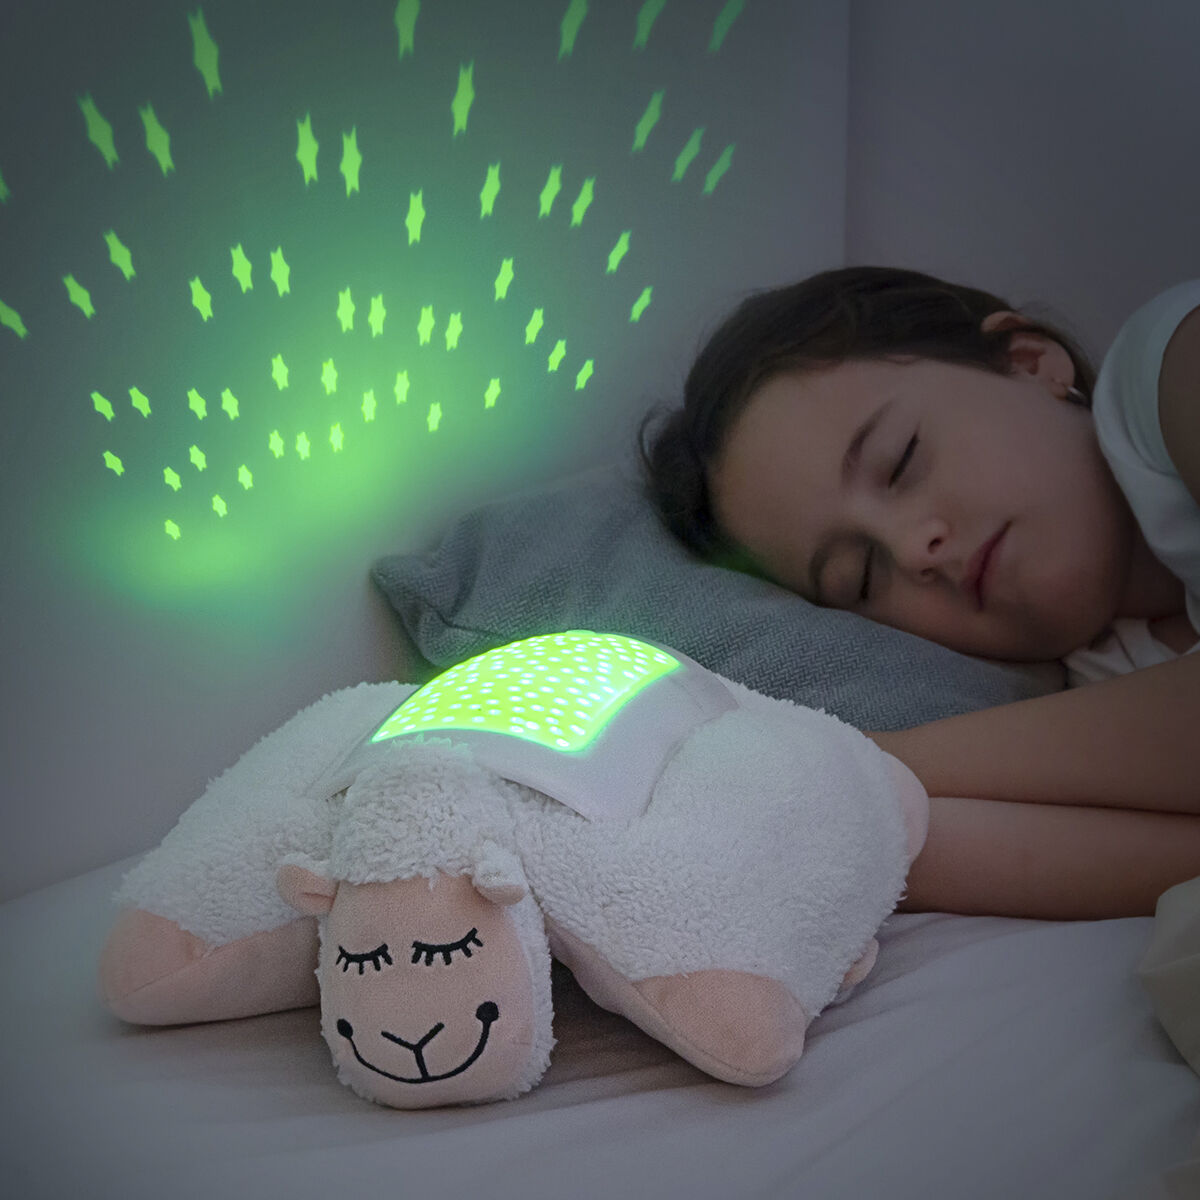 Jucărie de Pluș Oaie cu Proiector LED InnovaGoods